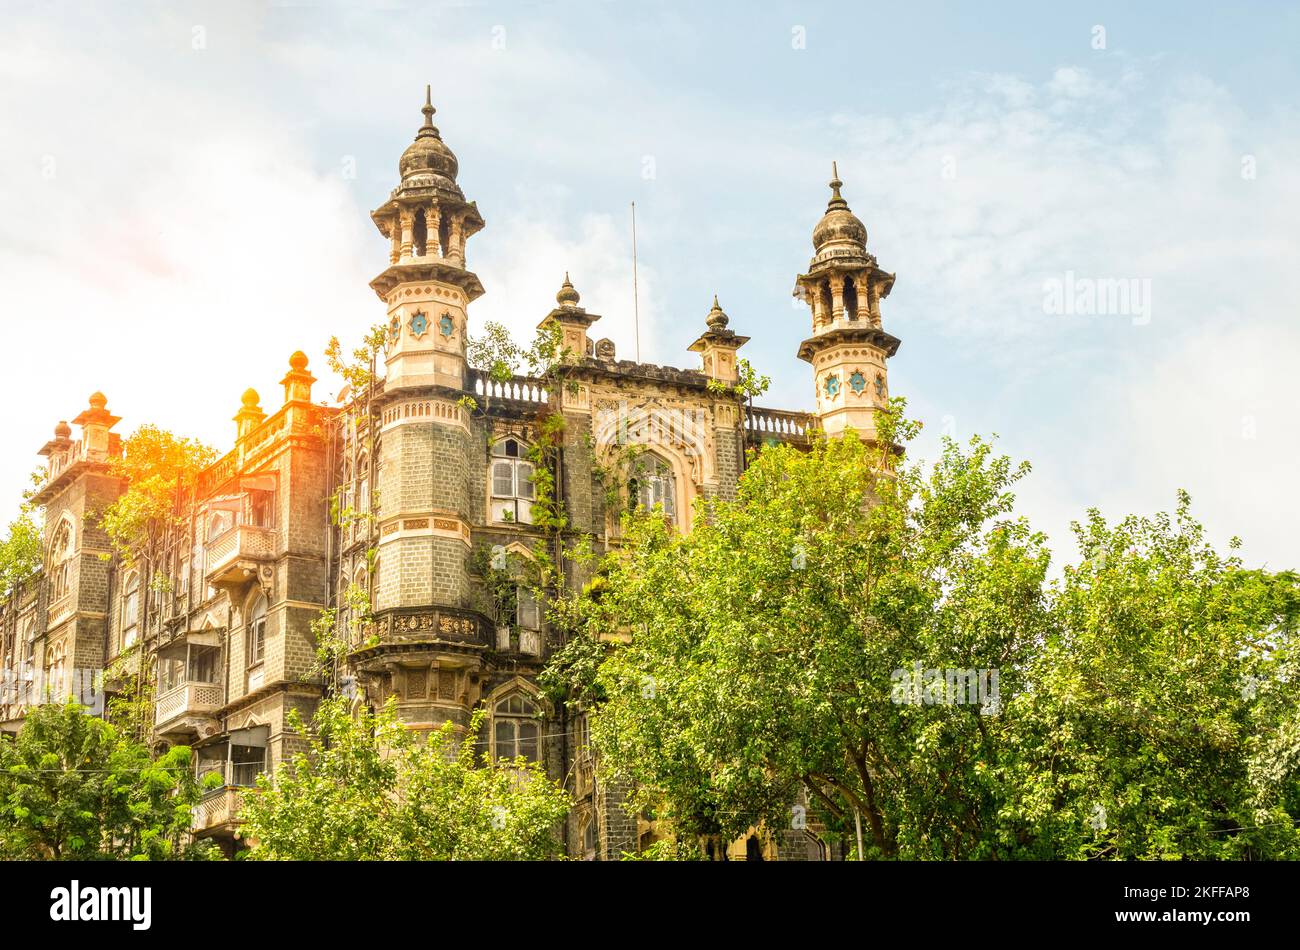 Soirée d'été et architecture britannique historique à Mumbai, Inde Banque D'Images